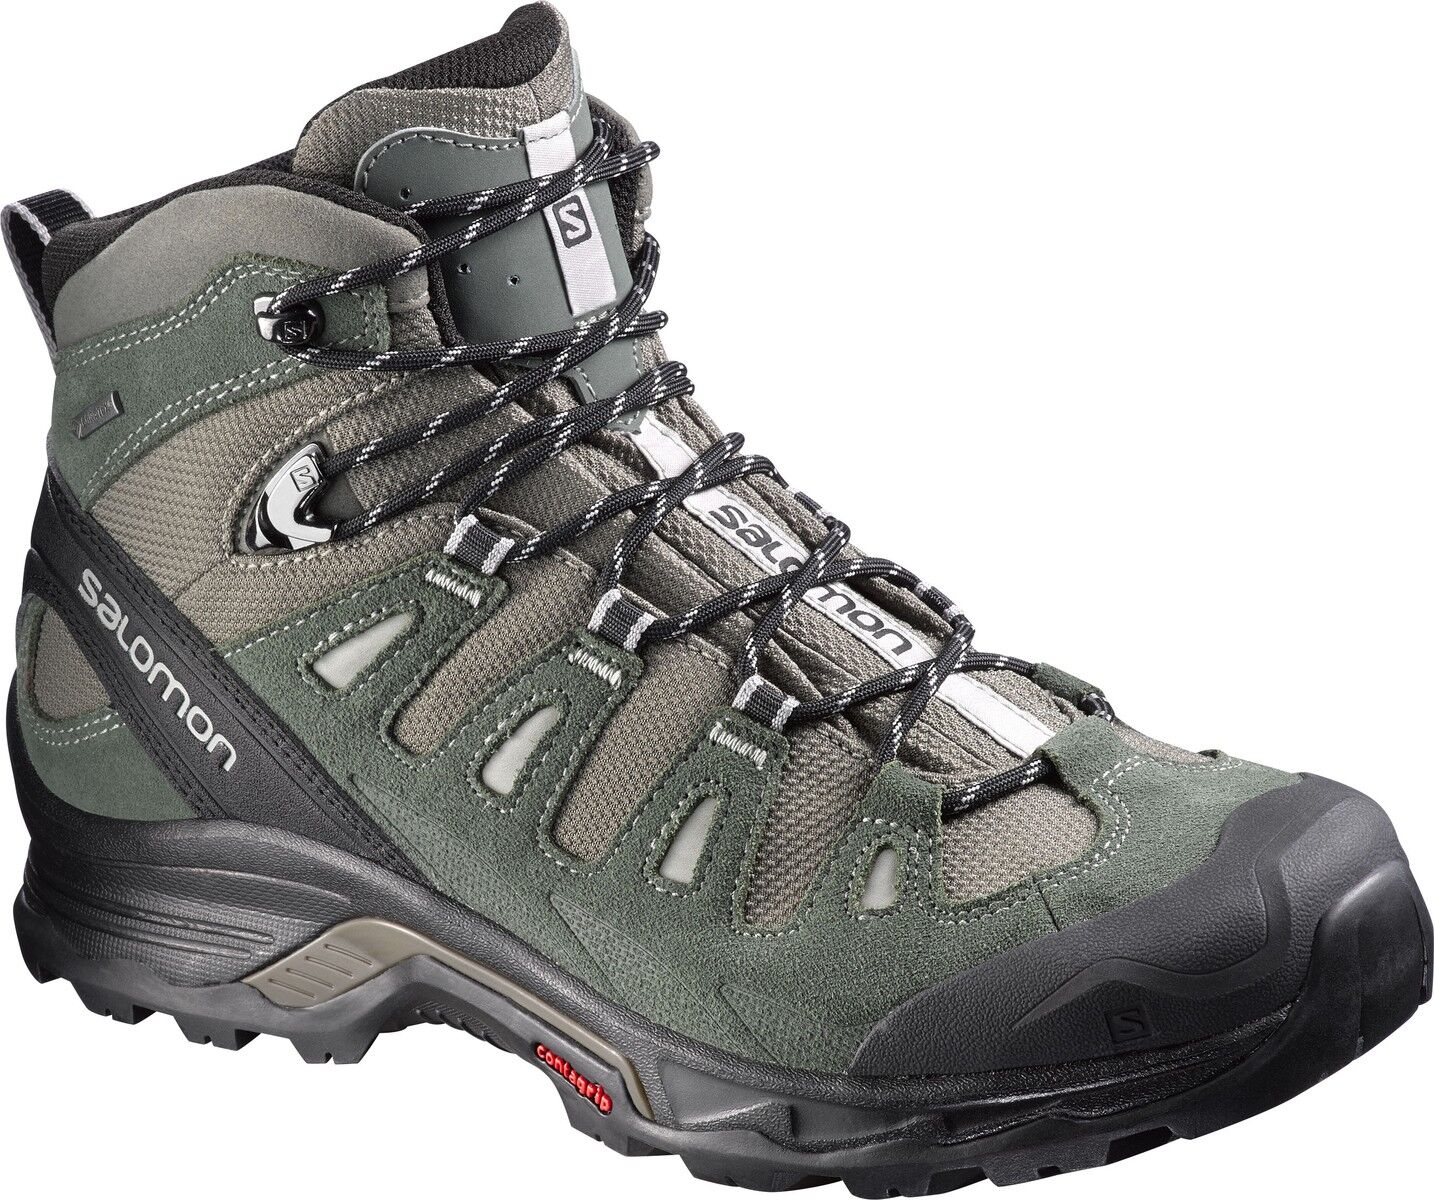 Salomon - Quest Prime GTX® - Hiking Boots - Men's